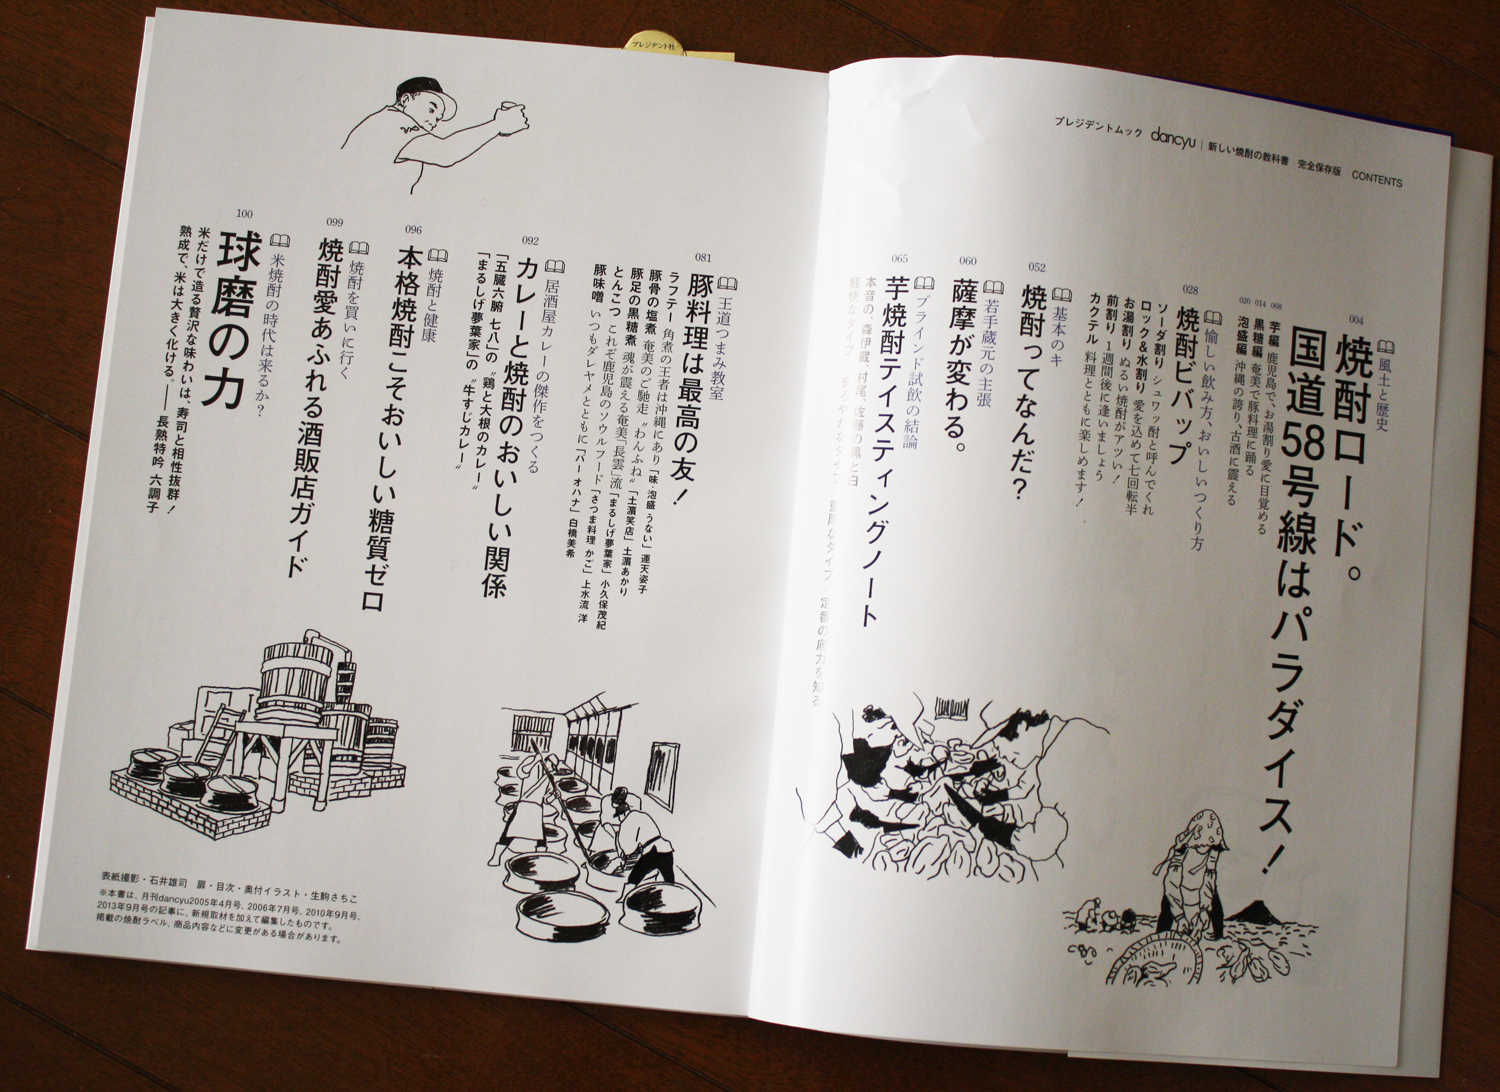 生駒さちこdancyu MOOK 『新しい焼酎の教科書』 | なりゆきサーカス